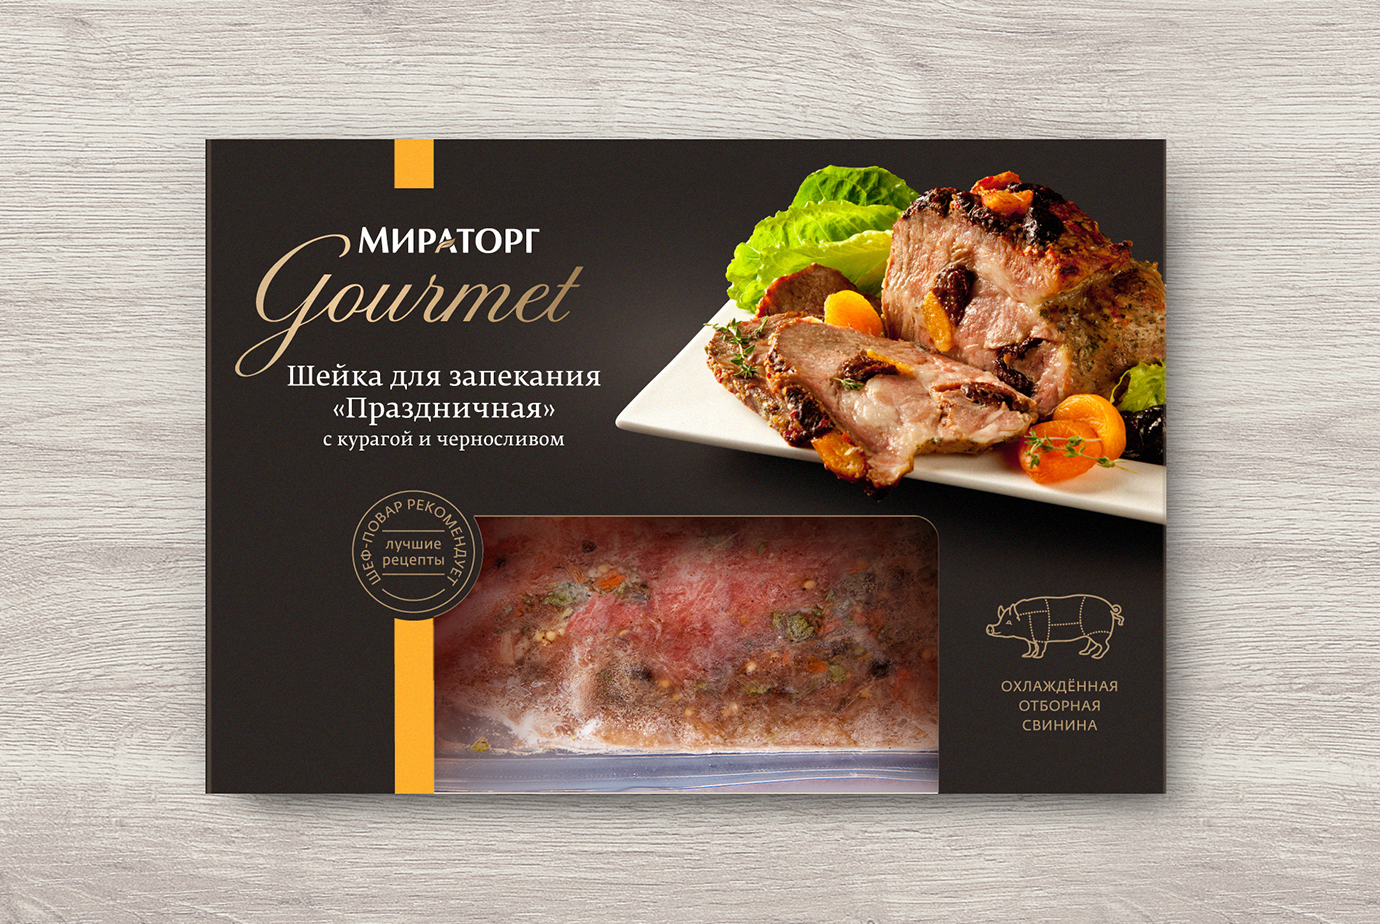 Фудстайлинг готовых блюд и дизайн упаковки из охлаждённой отборной свинины на этикетках линии Мираторг Gourmet